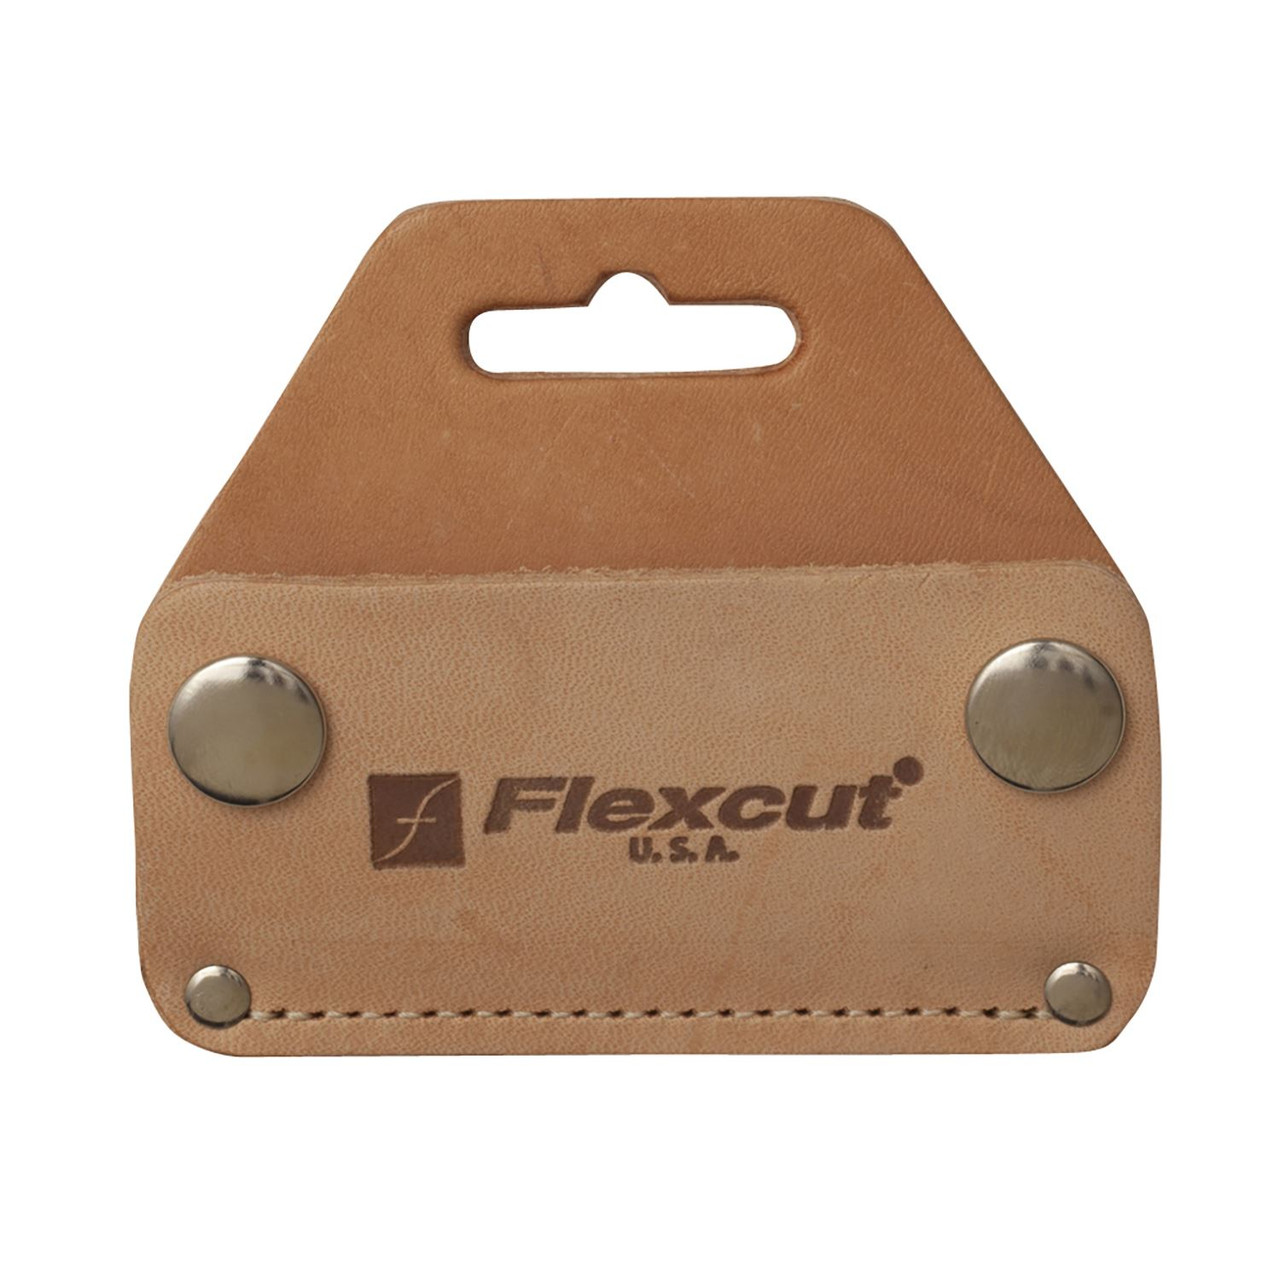 Flexcut - 5 Curved Blade Draw Knife with Sheath